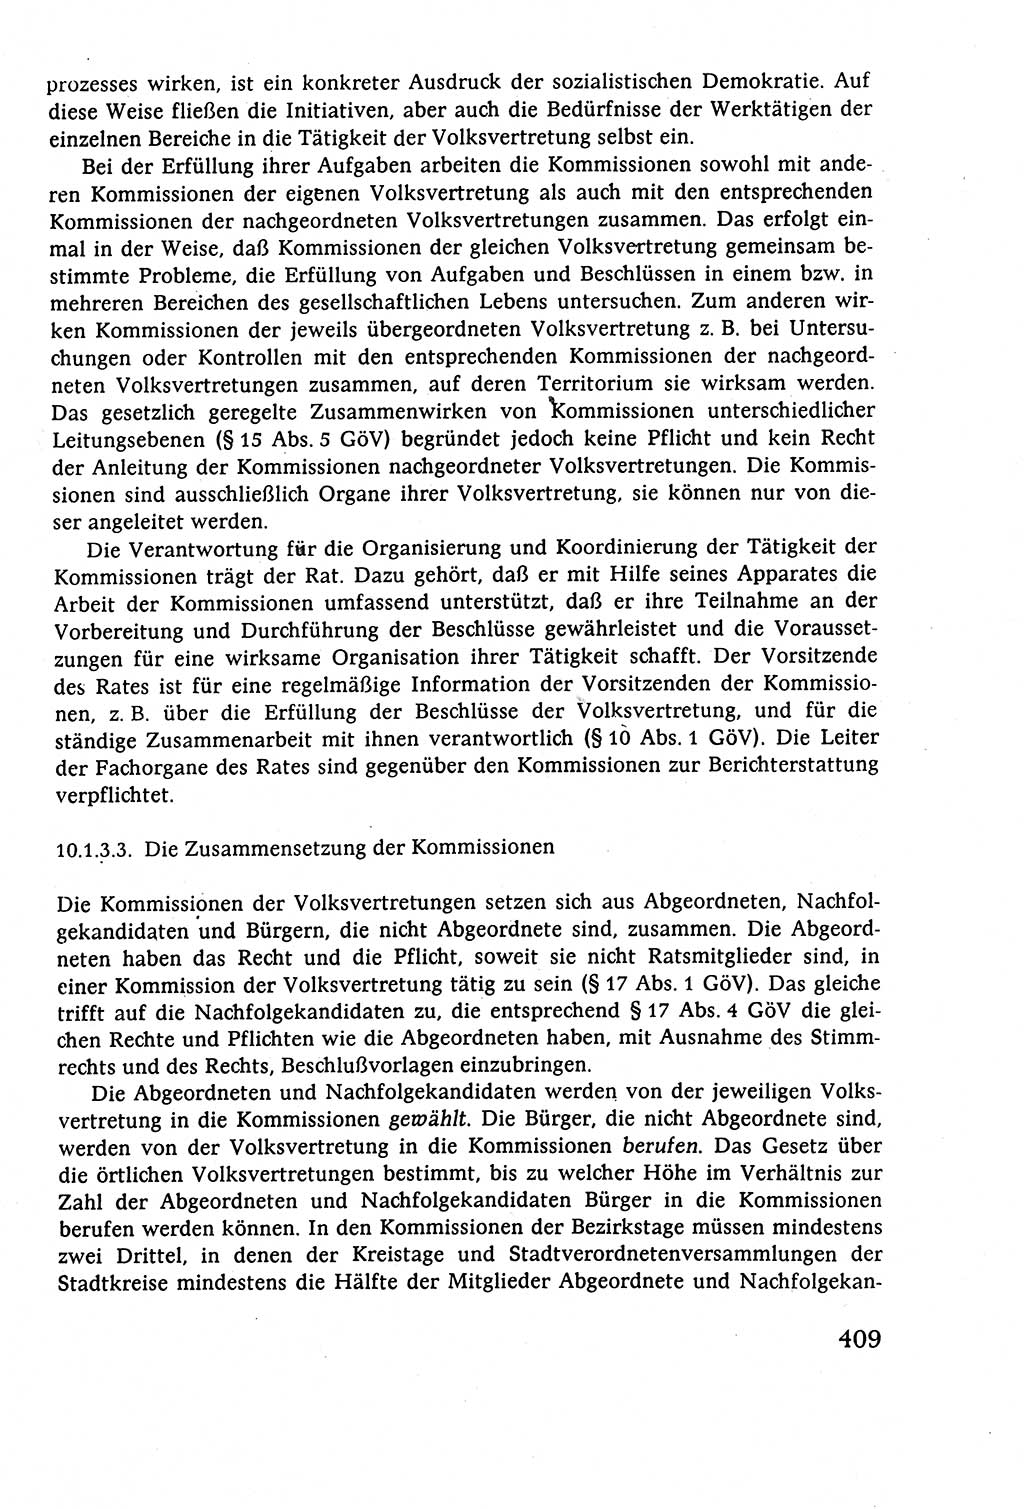 Staatsrecht der DDR (Deutsche Demokratische Republik), Lehrbuch 1977, Seite 409 (St.-R. DDR Lb. 1977, S. 409)